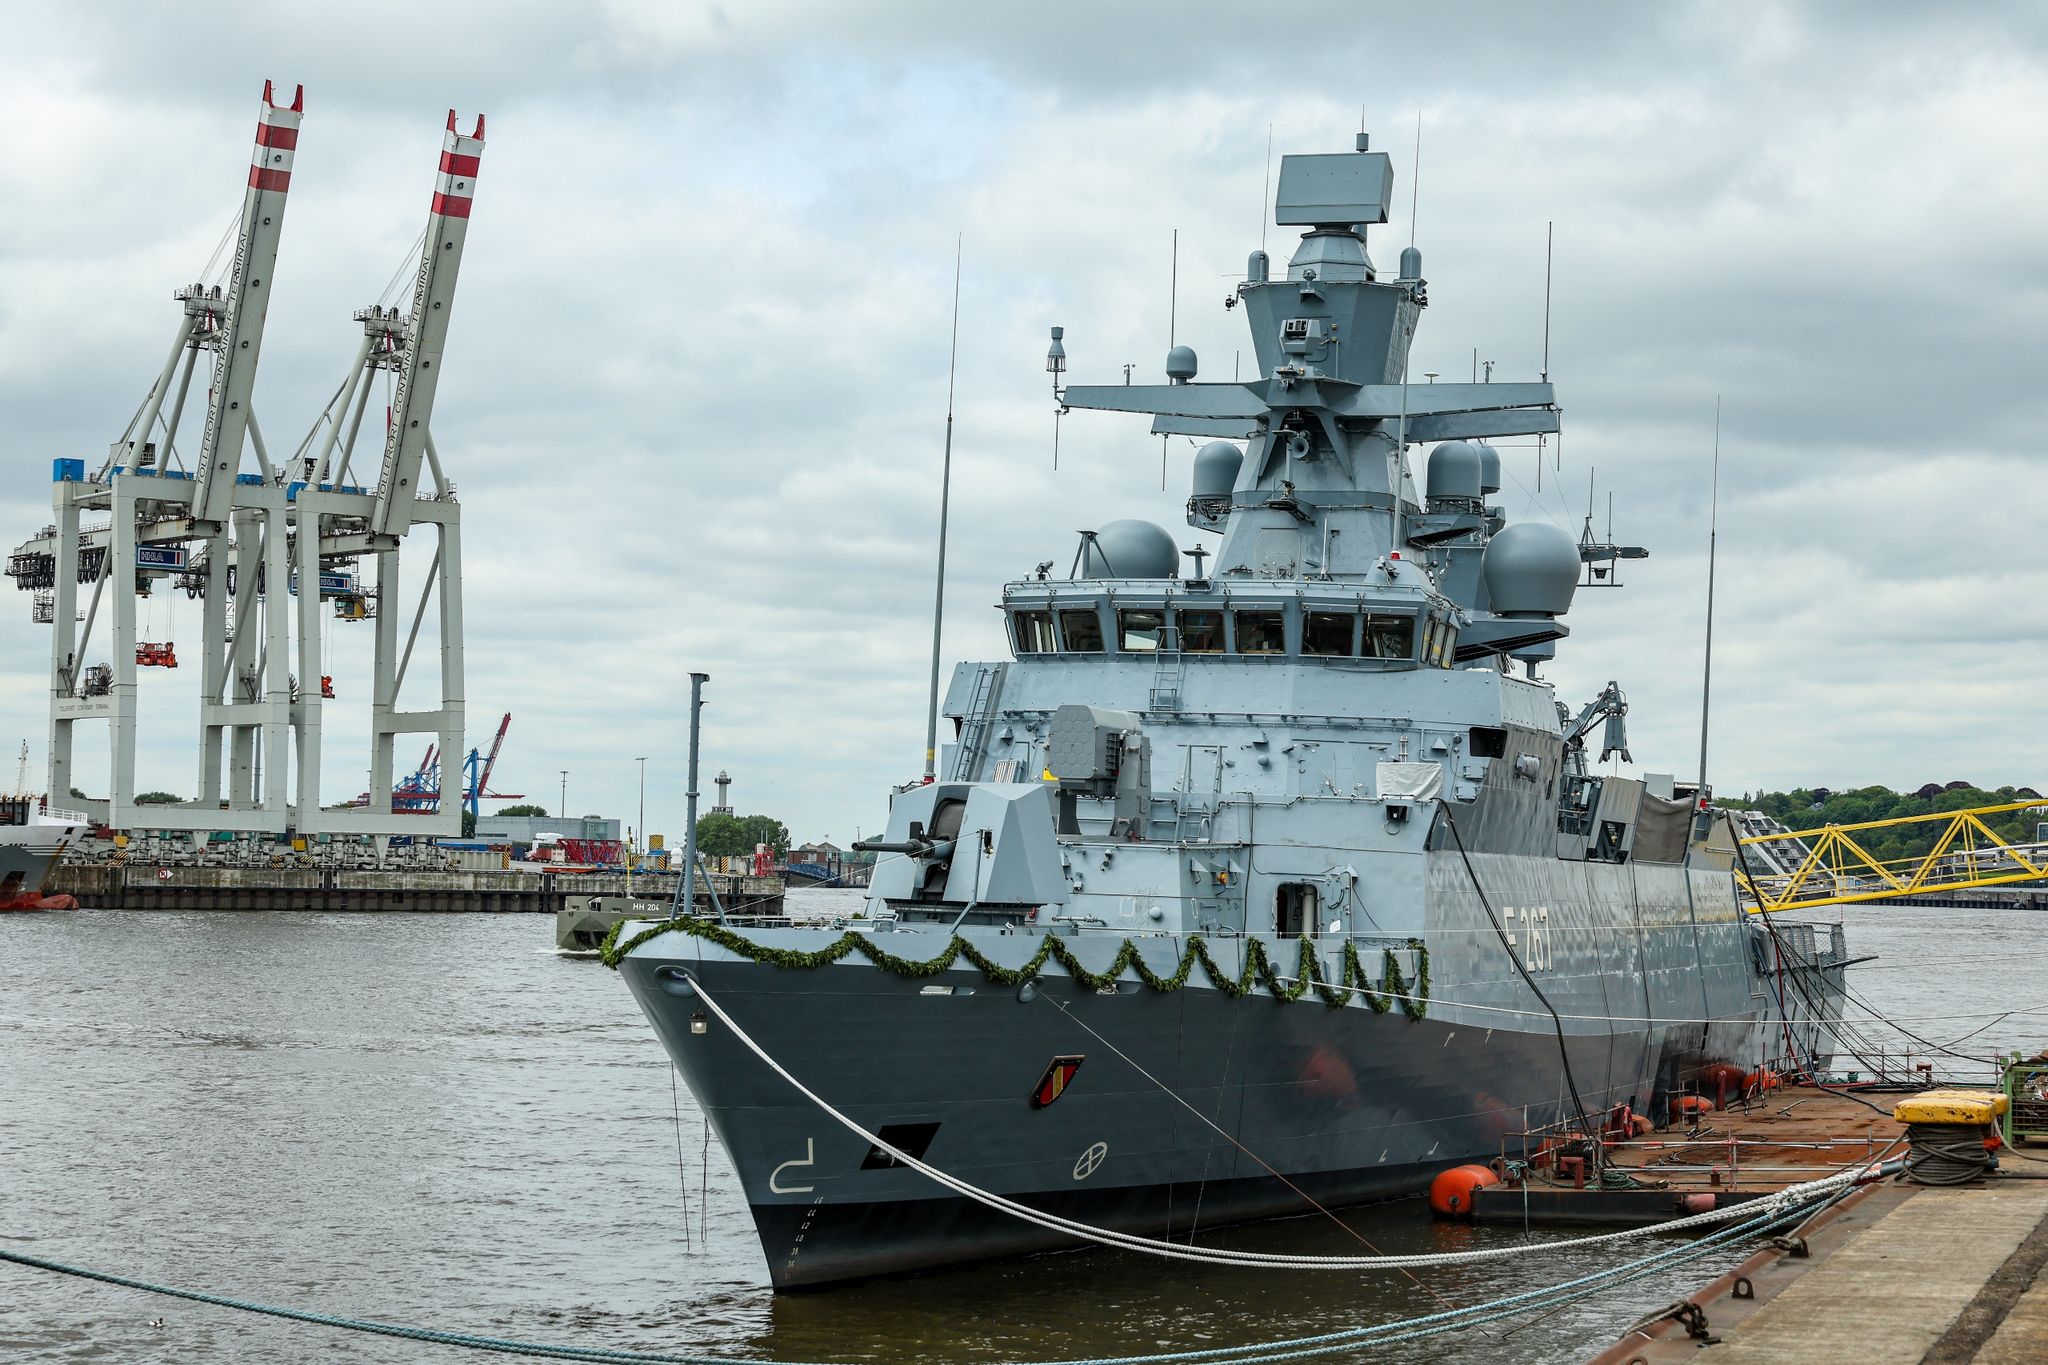 korvette der deutschen marine auf namen «karlsruhe» getauft